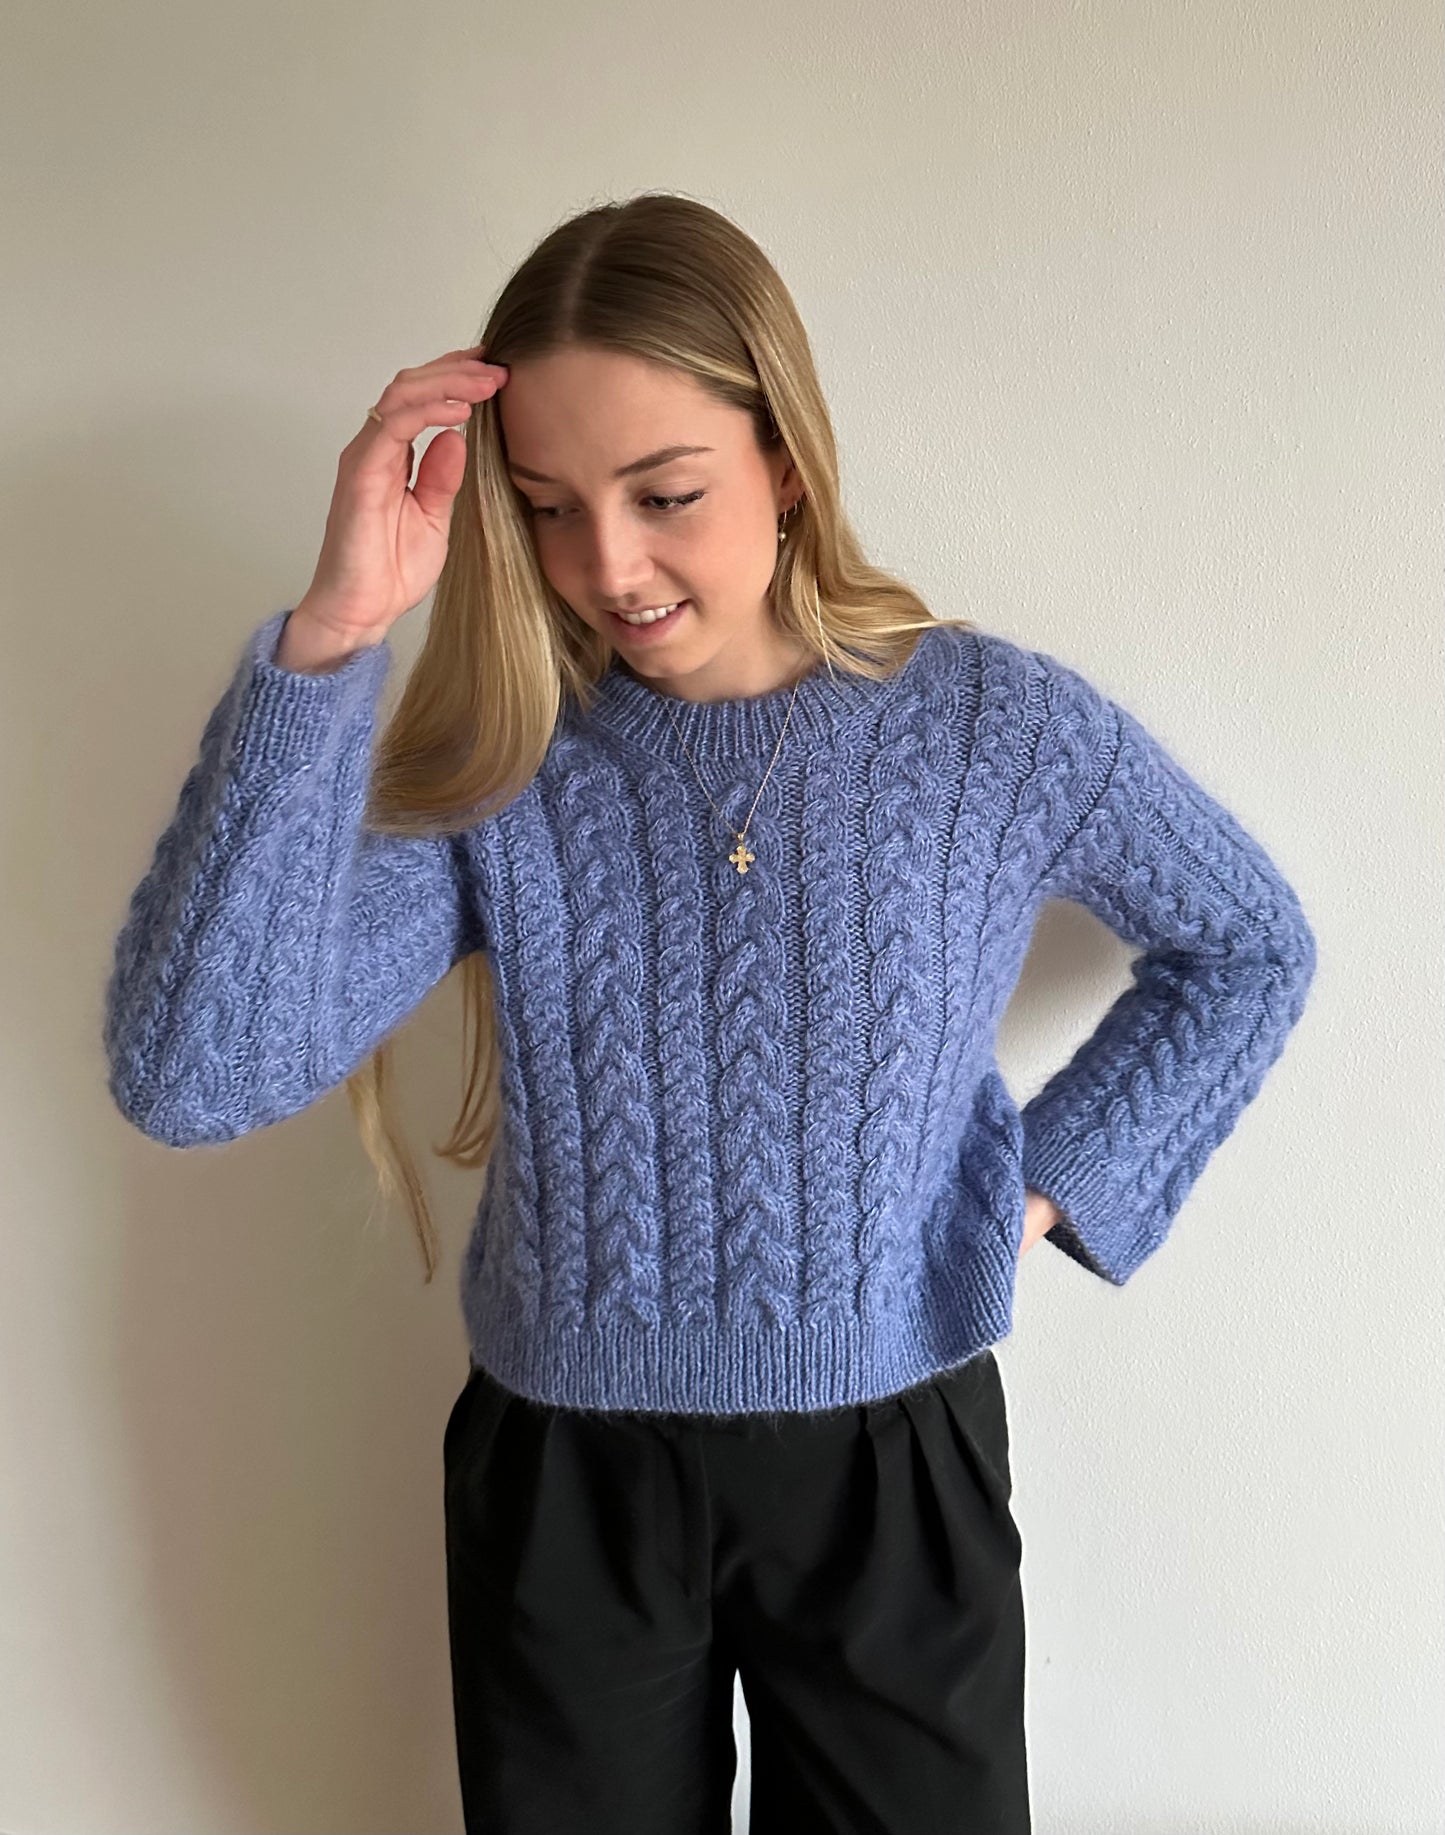 Pachira Sweater - English